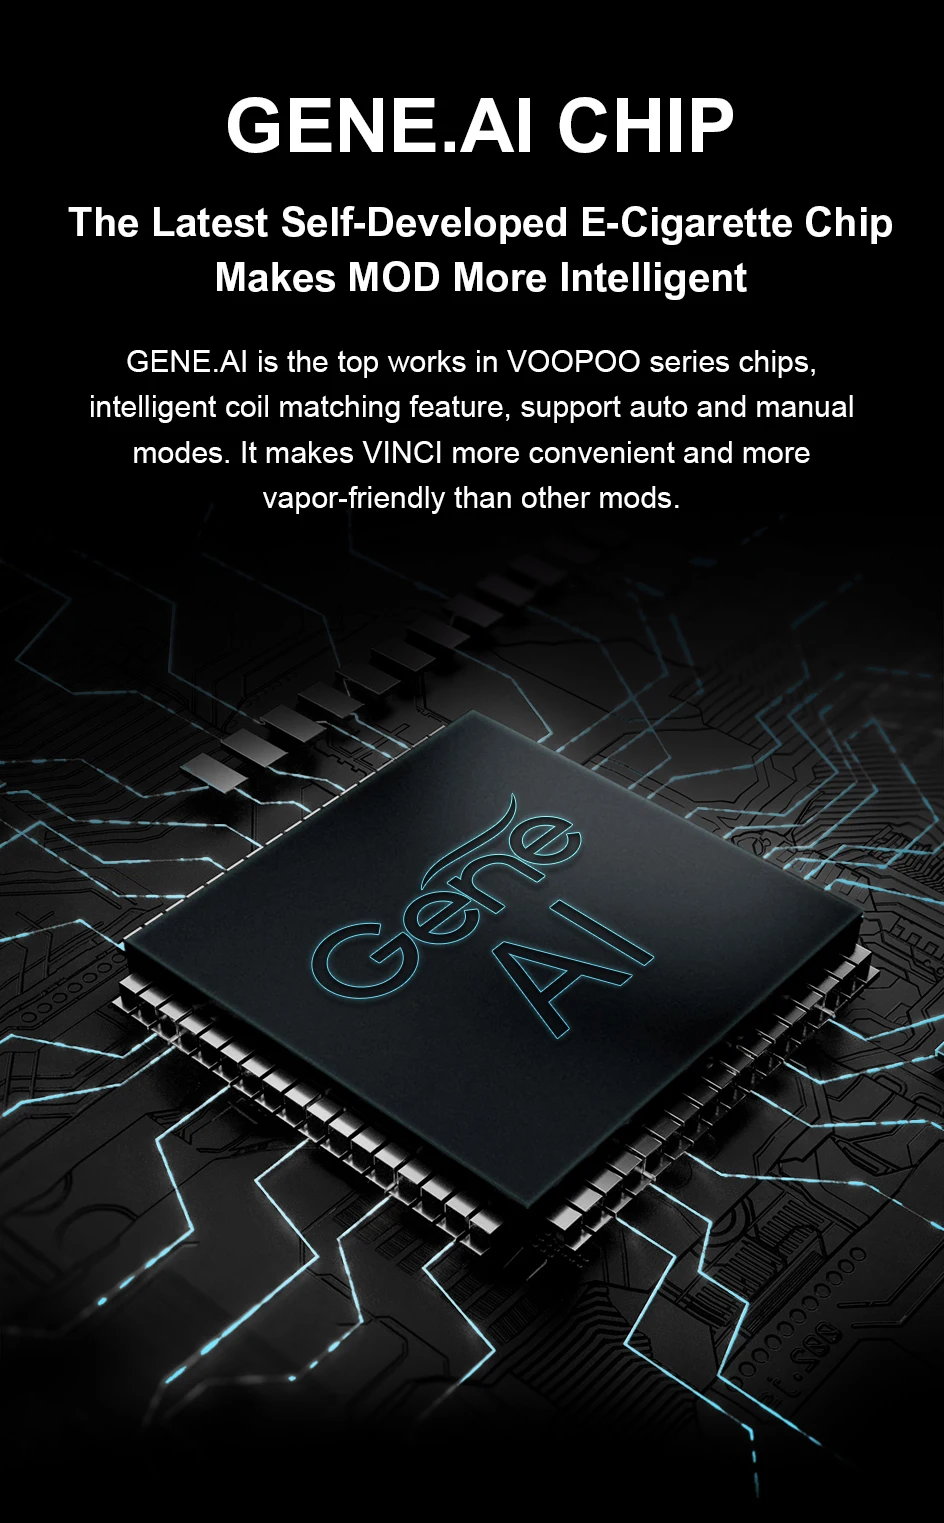 VOOPOO VINCI RAINBOW Pod Mod комплект 5,5 мл VINCI Pod 1500 мАч батарея 40 Вт VINCI MOD POD электронная сигарета испаритель Vape комплект